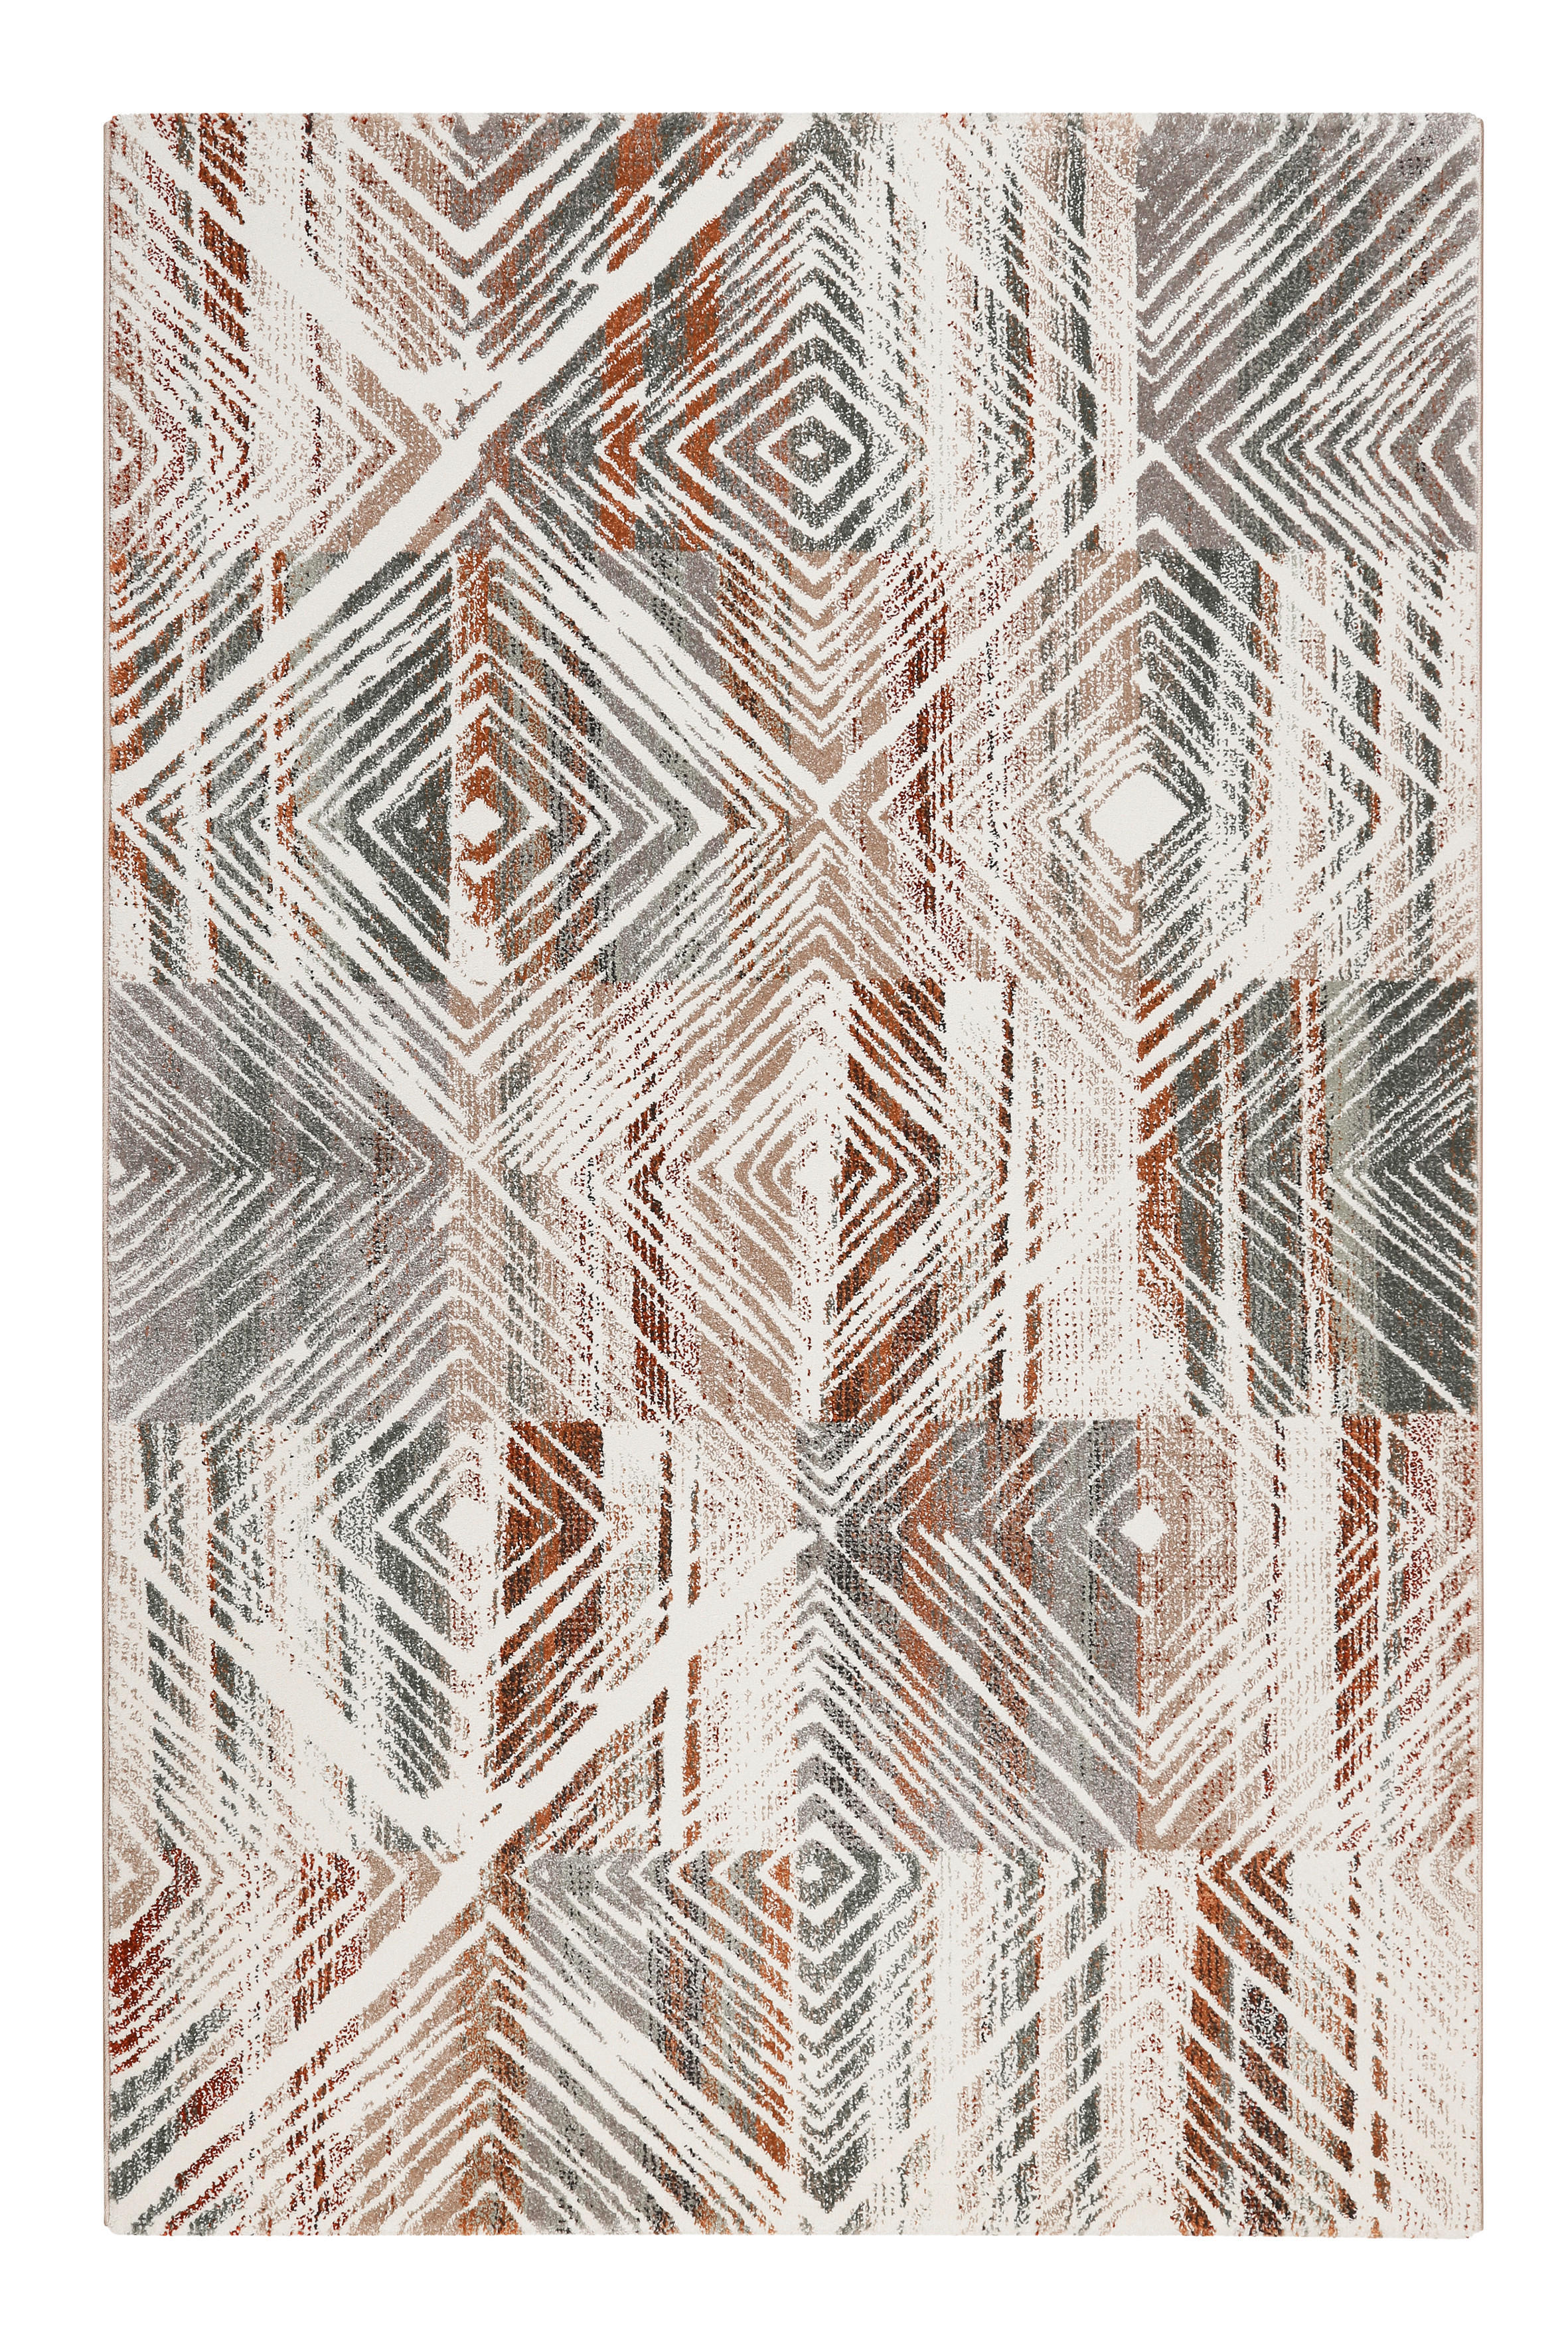 WEBTEPPICH 200/290 cm Cuba  - Rostfarben/Multicolor, Design, Textil (200/290cm) - Esprit